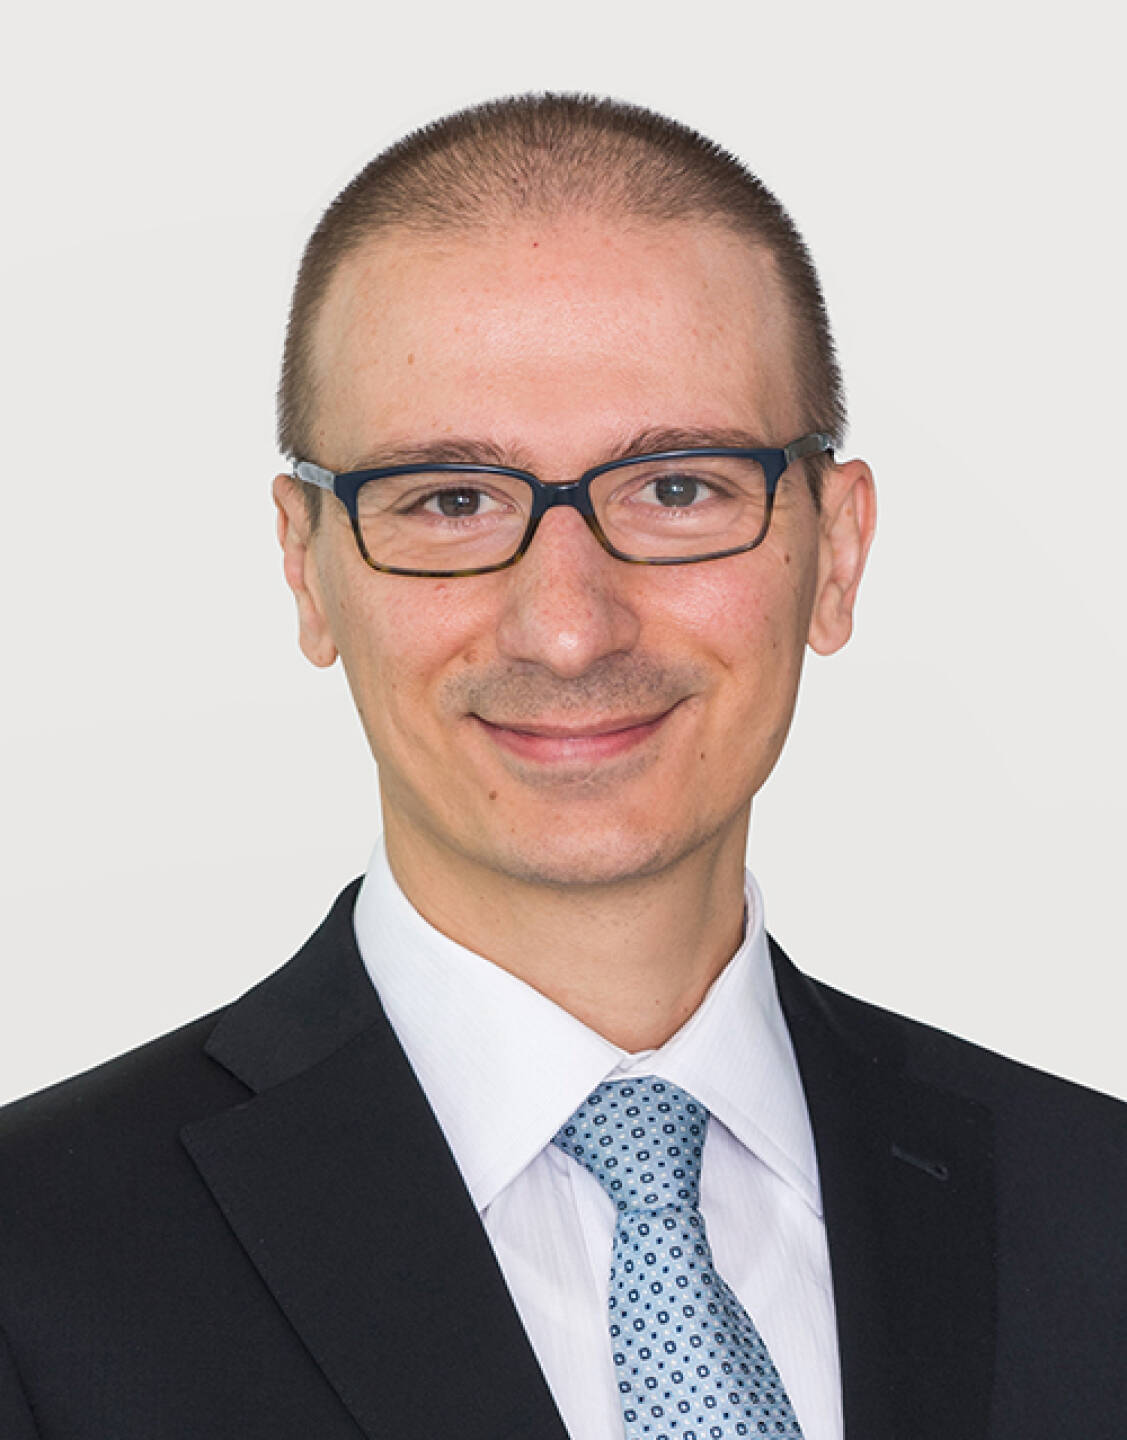 Alessandro Ghidini, Portfolio Manager für Emerging-Markets-Anleihen bei GAM Investments, Credit: GAM